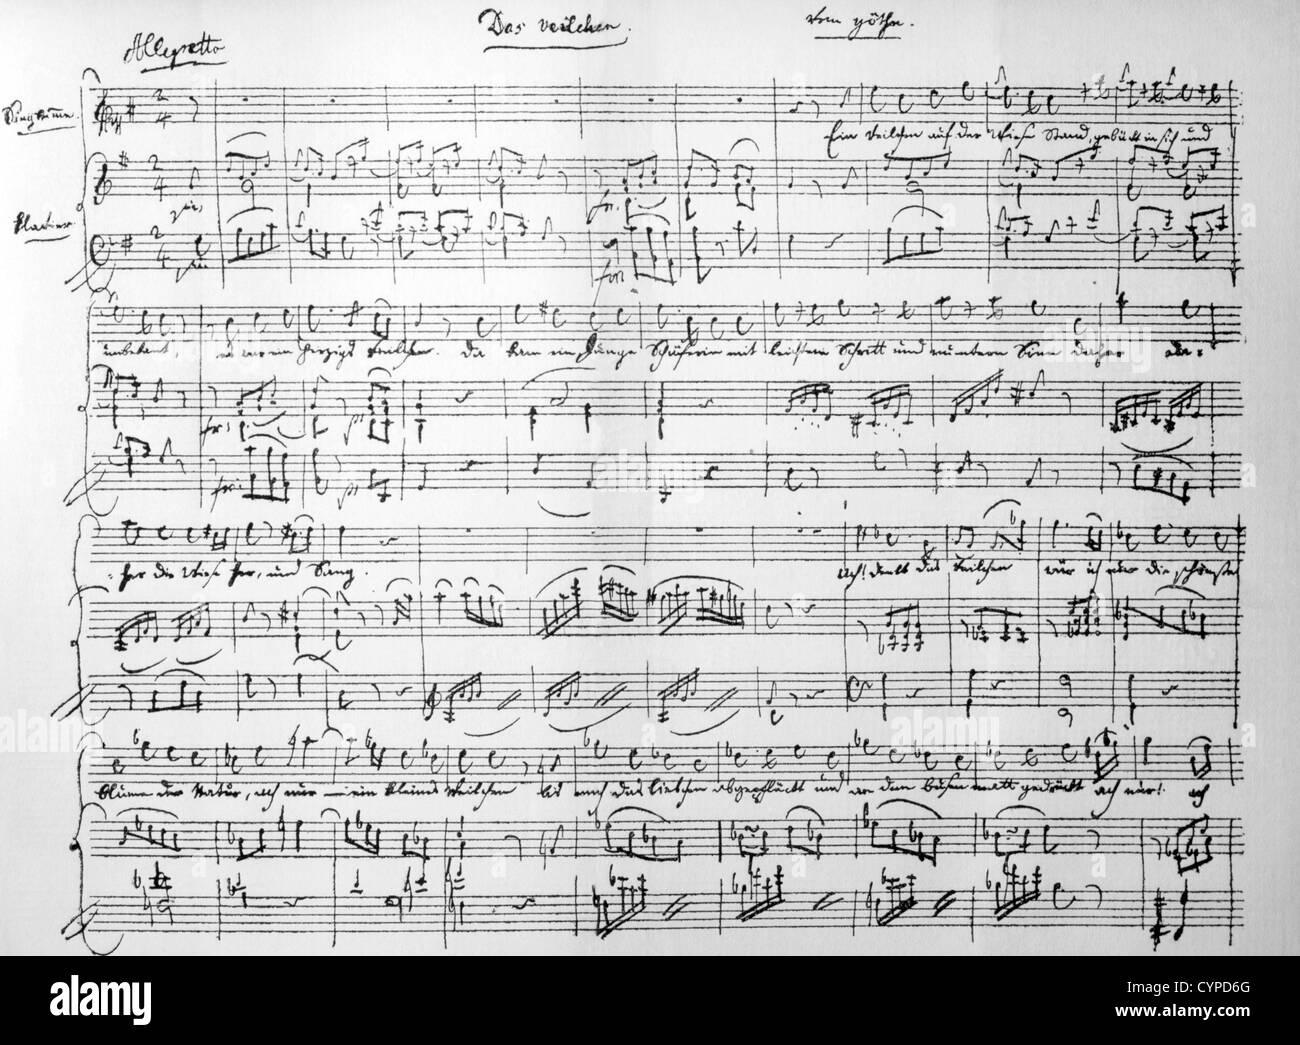 Manuscrit musical de Wolfgang Amadeus Mozart, de la musique pour la violette de Goethe. Banque D'Images